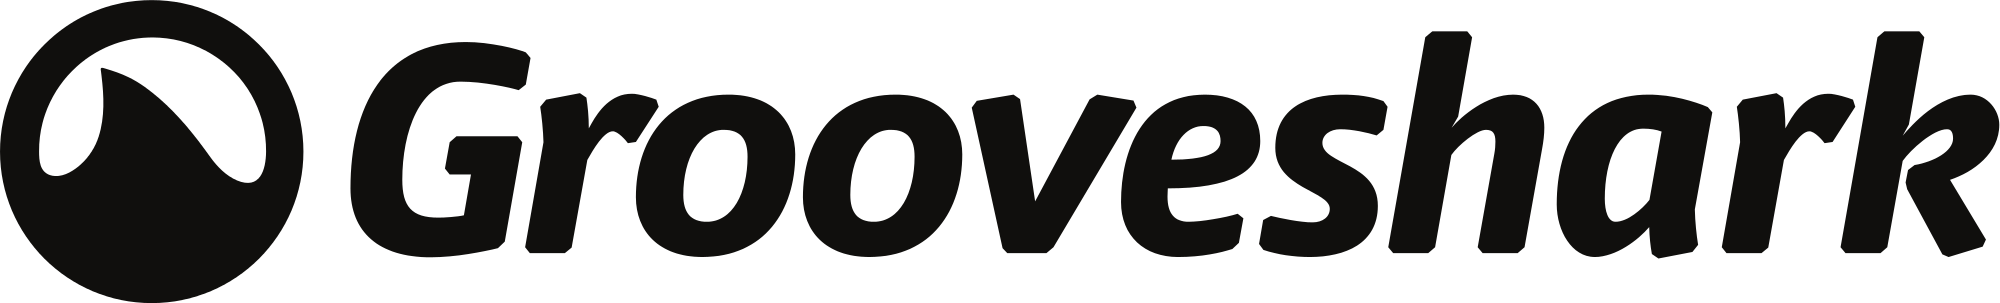 Grooveshark Logo - Grooveshark logo horizontal.svg